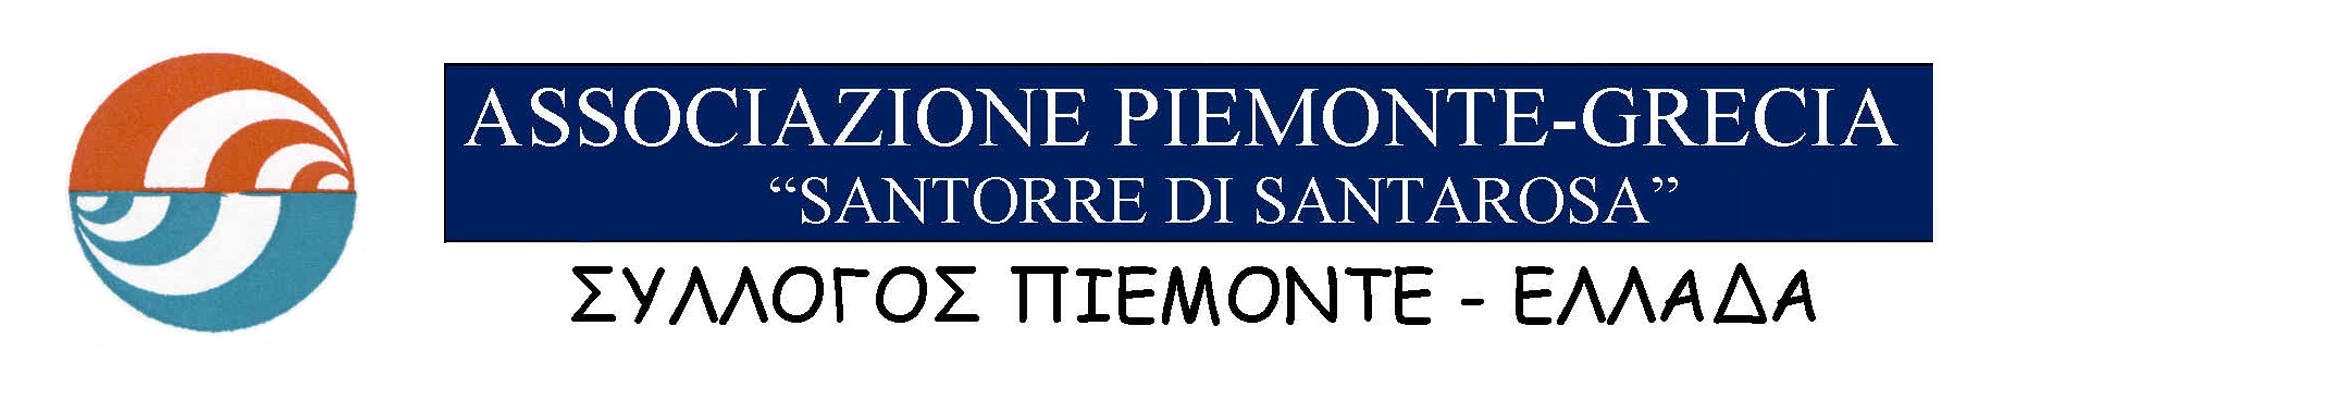 Associazione Piemonte-Grecia Logo